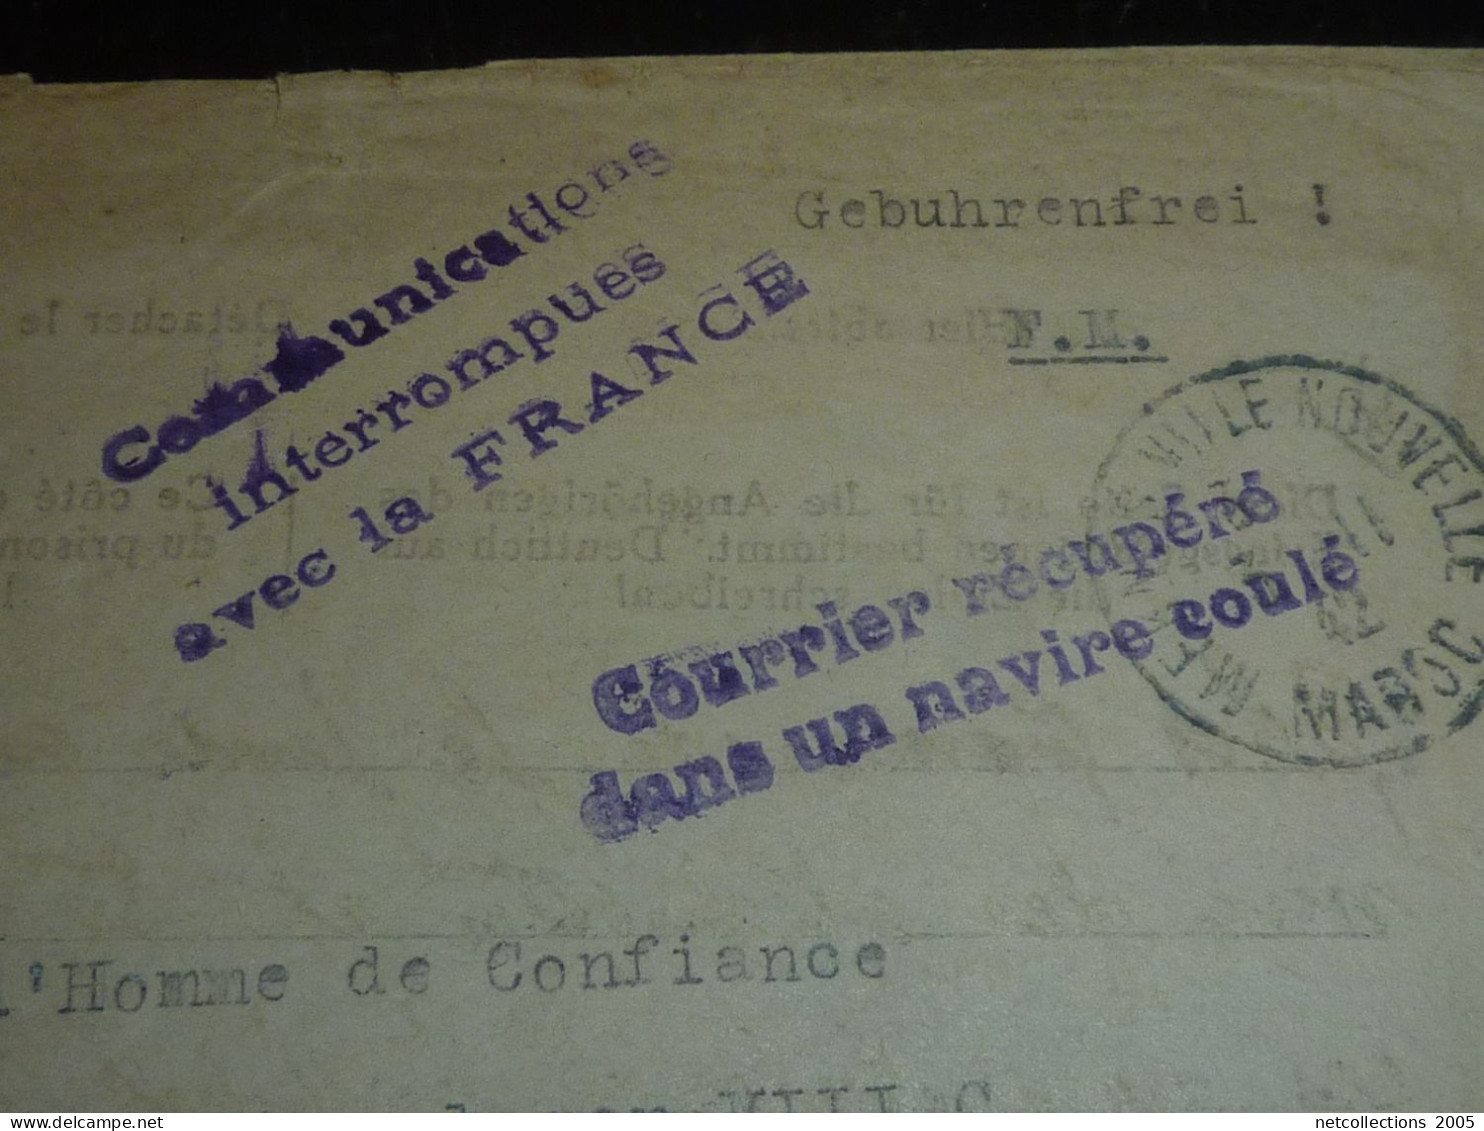 ENVELOPPE AU DEPART DE MEKNES 2-11-1942 - CACHET COURRIER RECUPERE DANS UN NAVIRE COULE -COURRIER EN FRANCHISE...(20/09) - Unfallpost